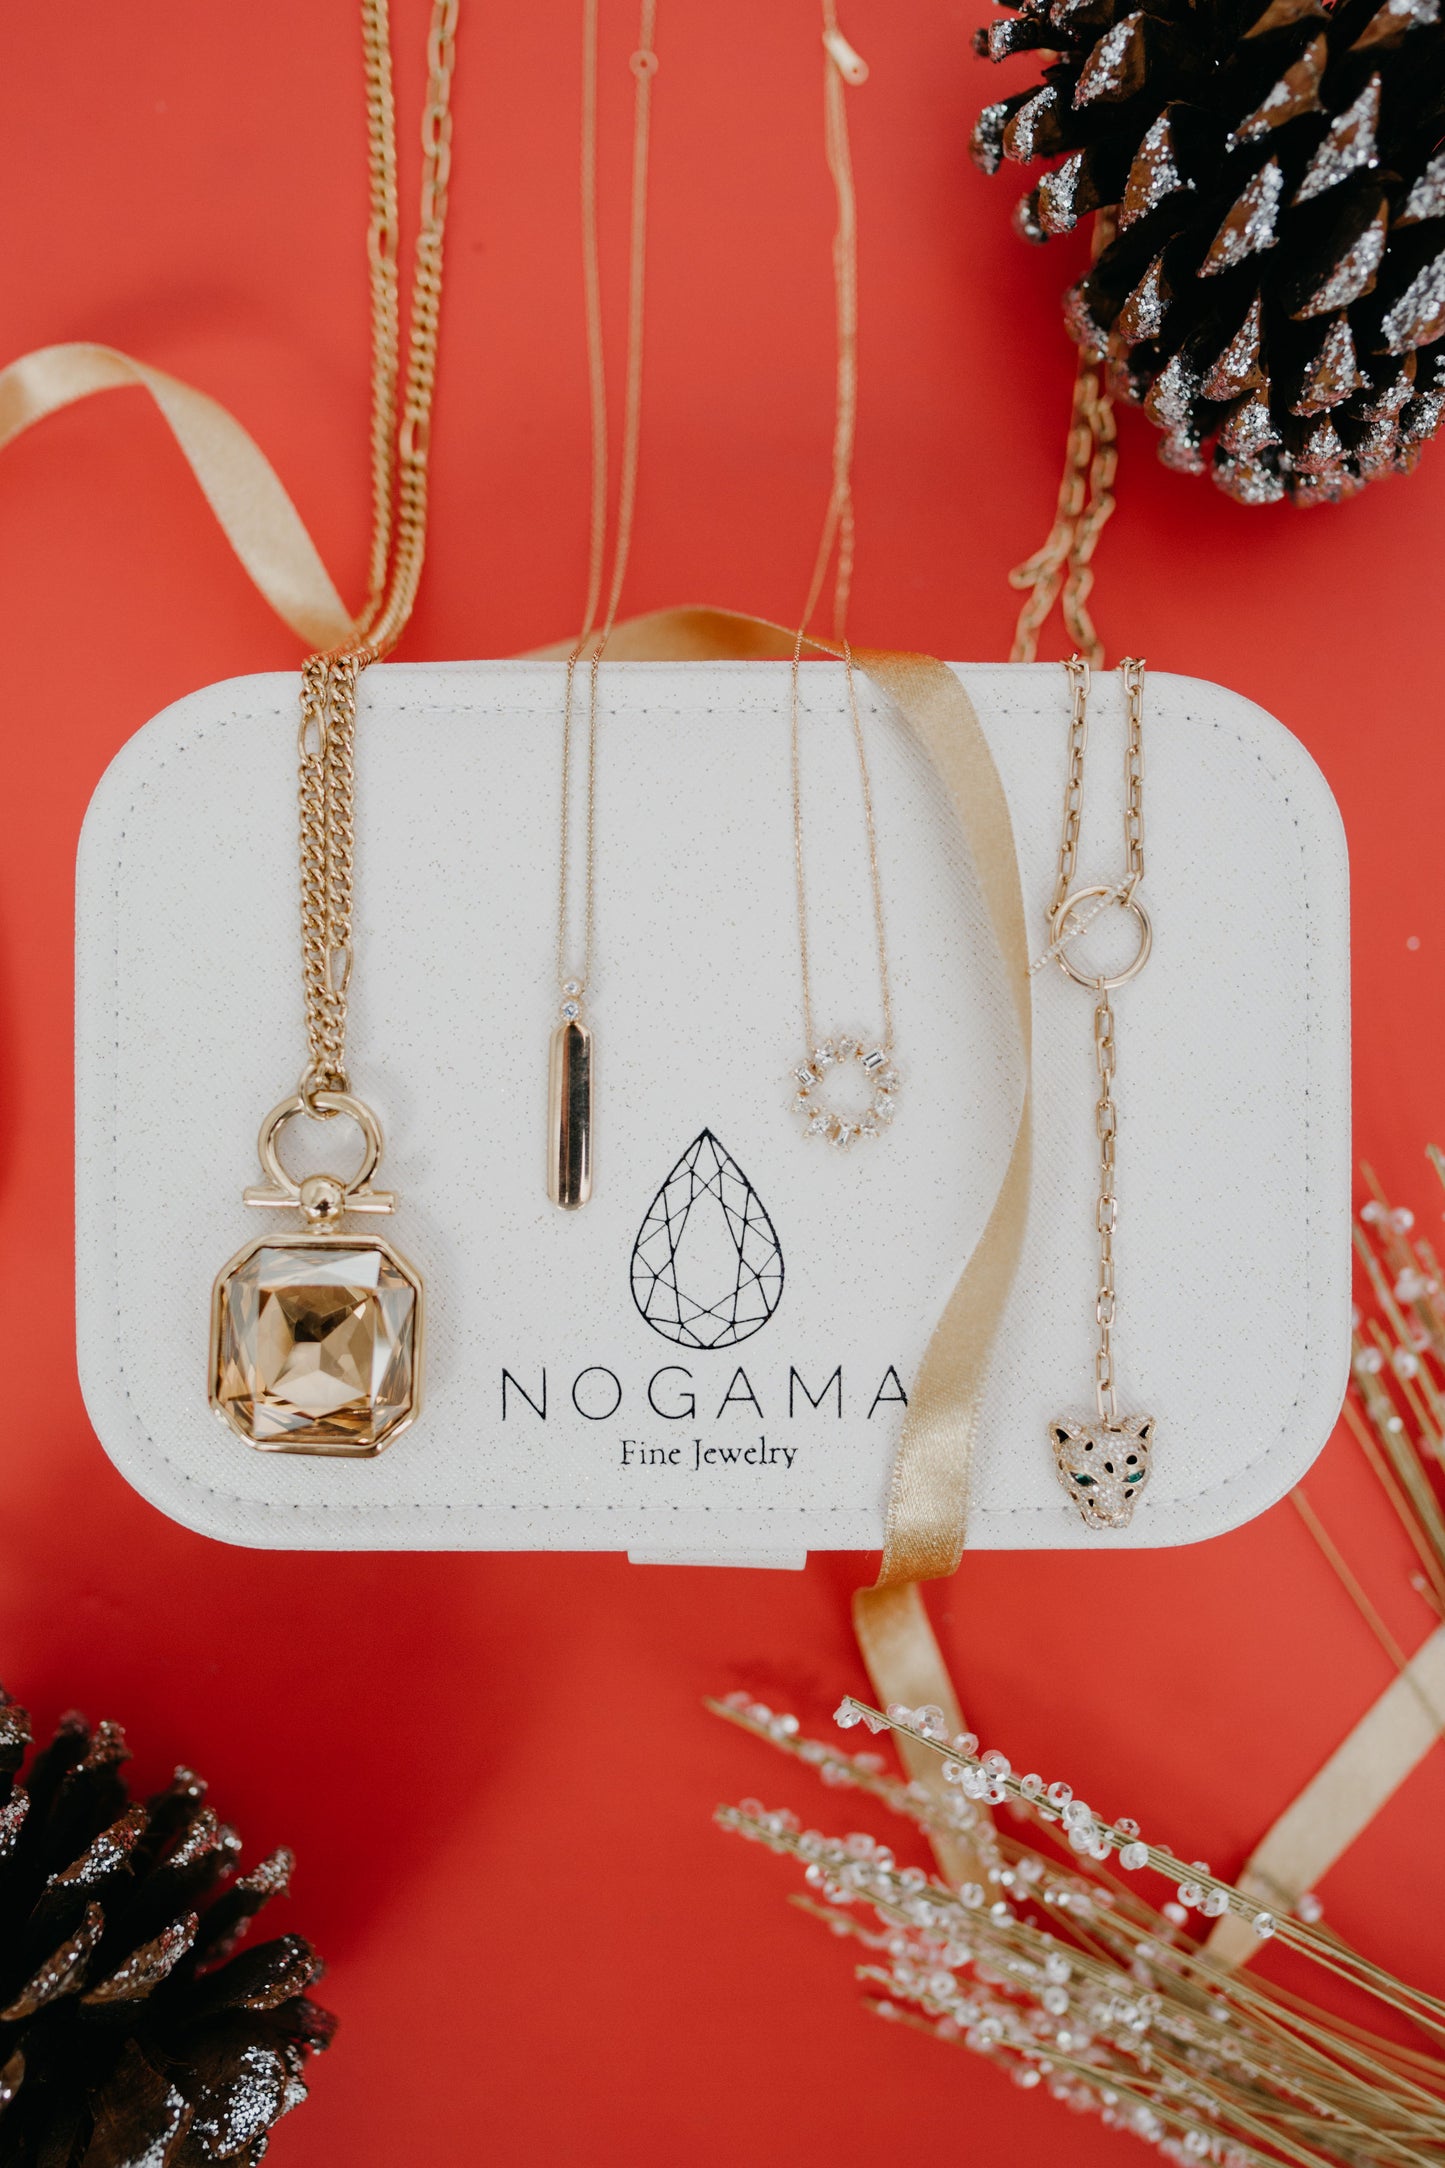 Nogama Jewelry Travel Case